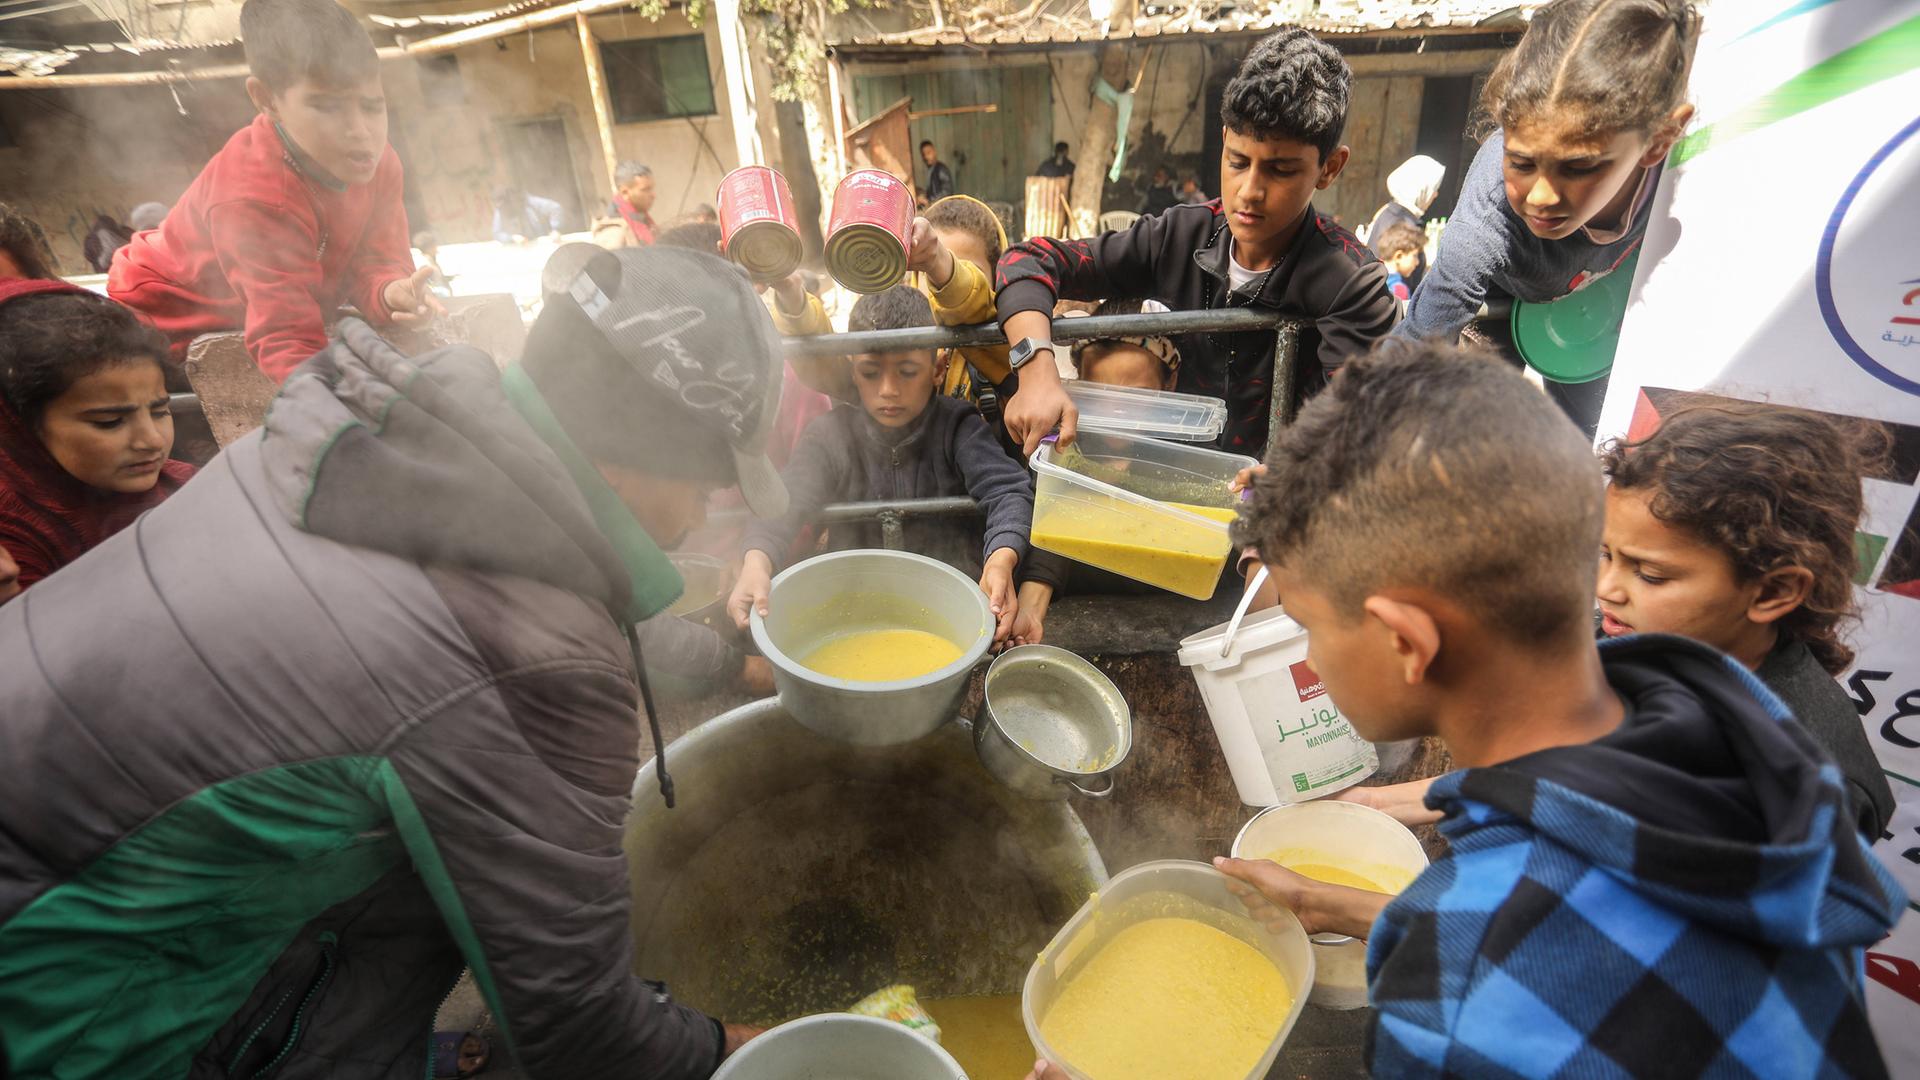 Im Gazastreifen stehen Kinder um Essen an, sie halten Behälter in den Händen. In der Mitte des Fotos steht ein Topf, daraus verteilt eine Person Suppe.